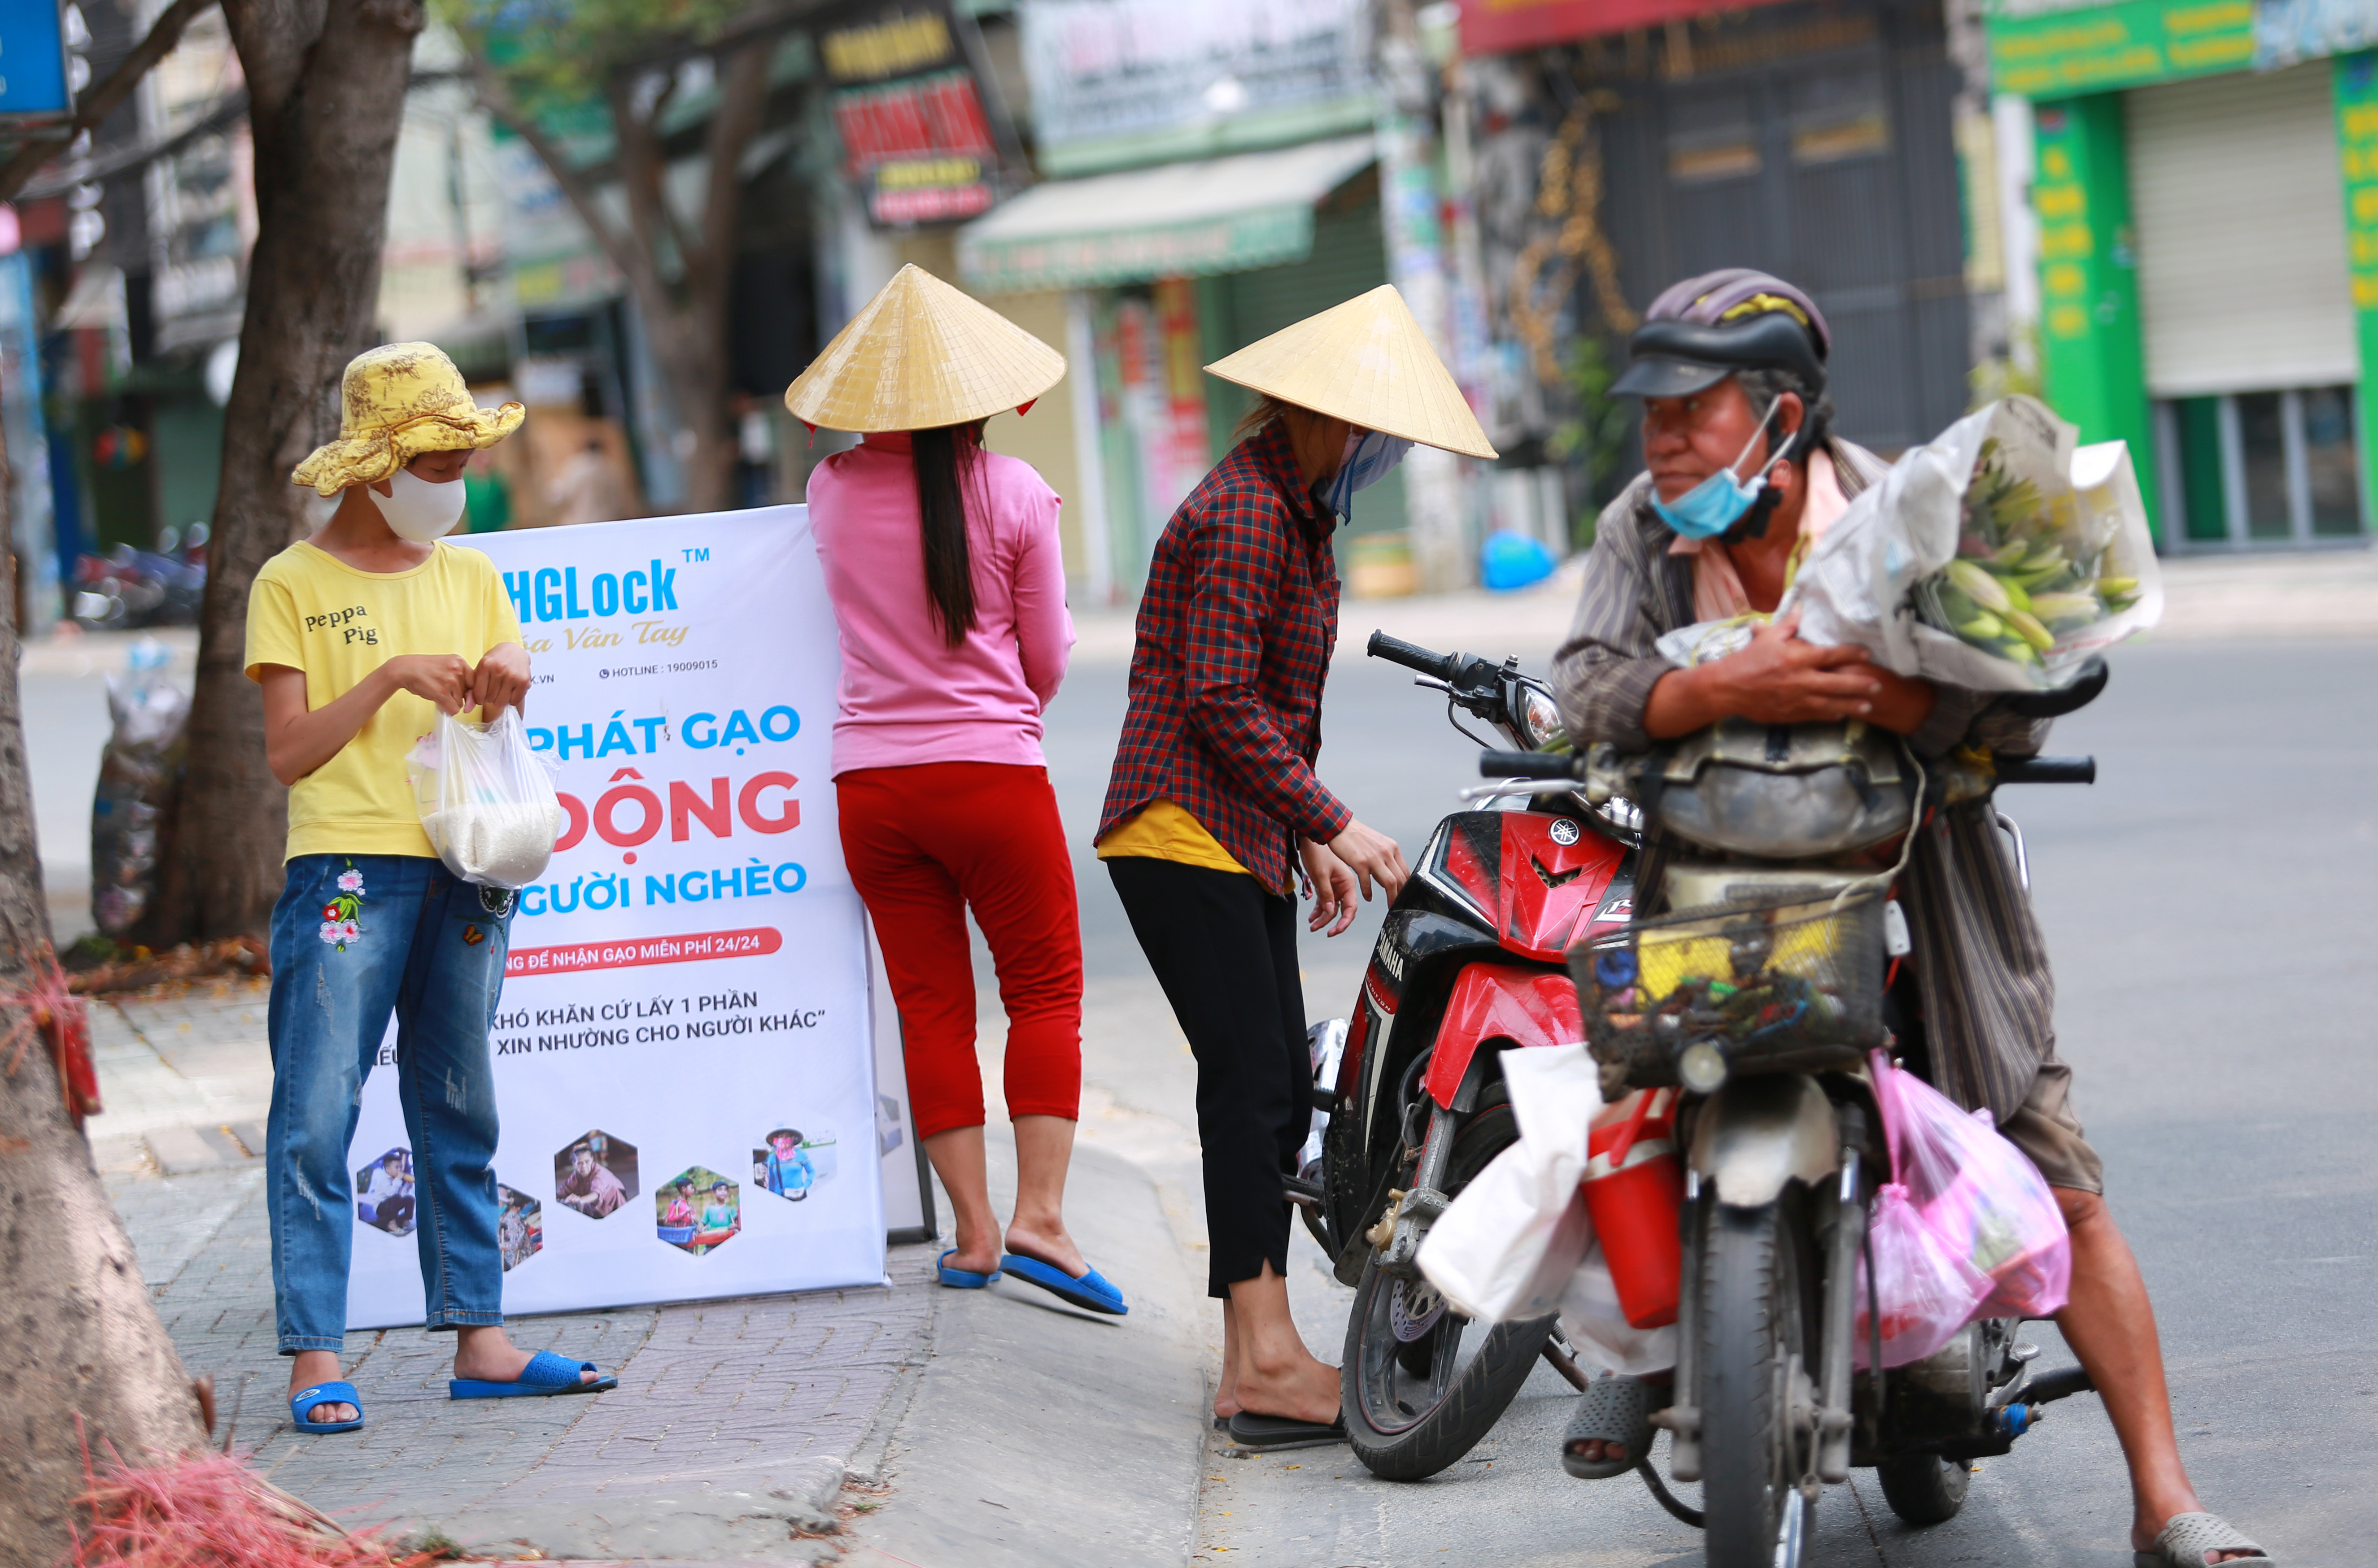 Máy phát gạo tự động cho hàng nghìn người nghèo ở Sài Gòn, chỉ cần bấm nút là có gạo - Ảnh 14.